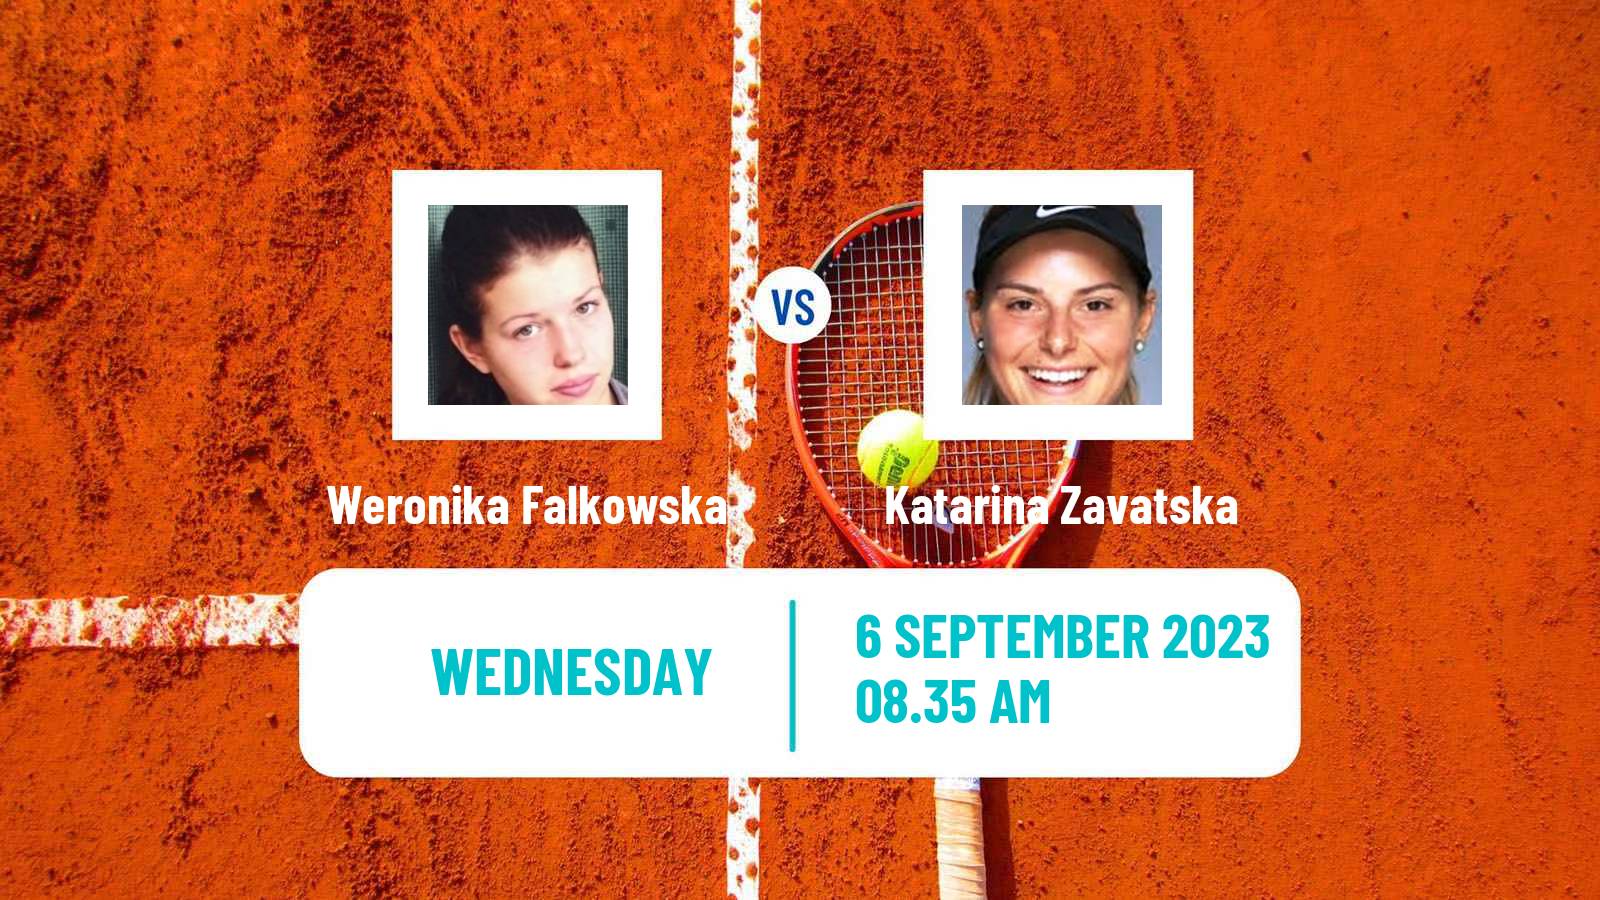 Tennis ITF W60 Vienna Women Weronika Falkowska - Katarina Zavatska